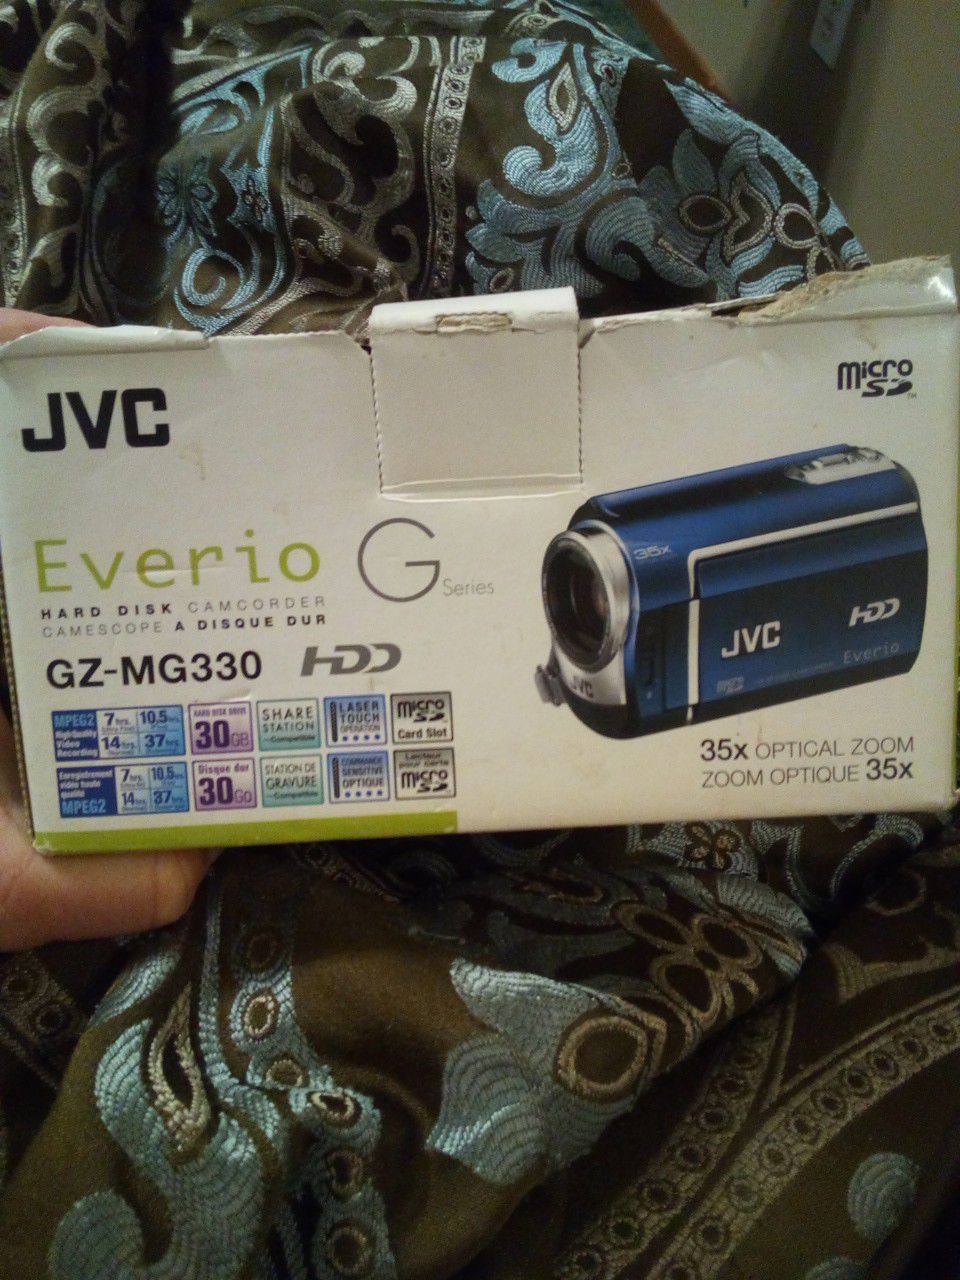 JVC hard disk camcorder